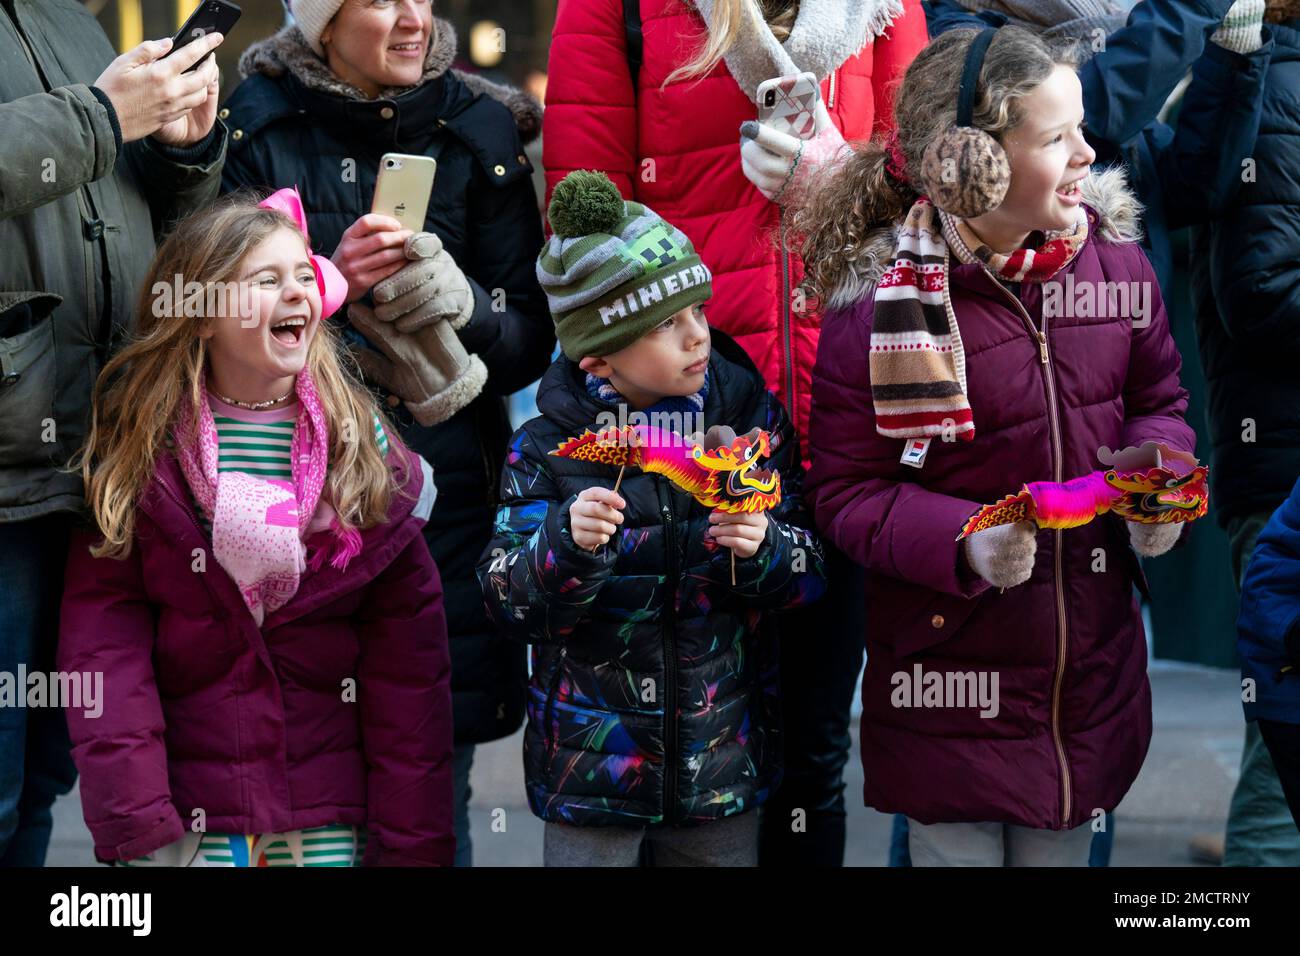 Gli spettatori assistono alla sfilata durante le celebrazioni del Capodanno cinese a Londra, che segnano l'anno del coniglio. Data immagine: Domenica 22 gennaio 2023. Foto Stock